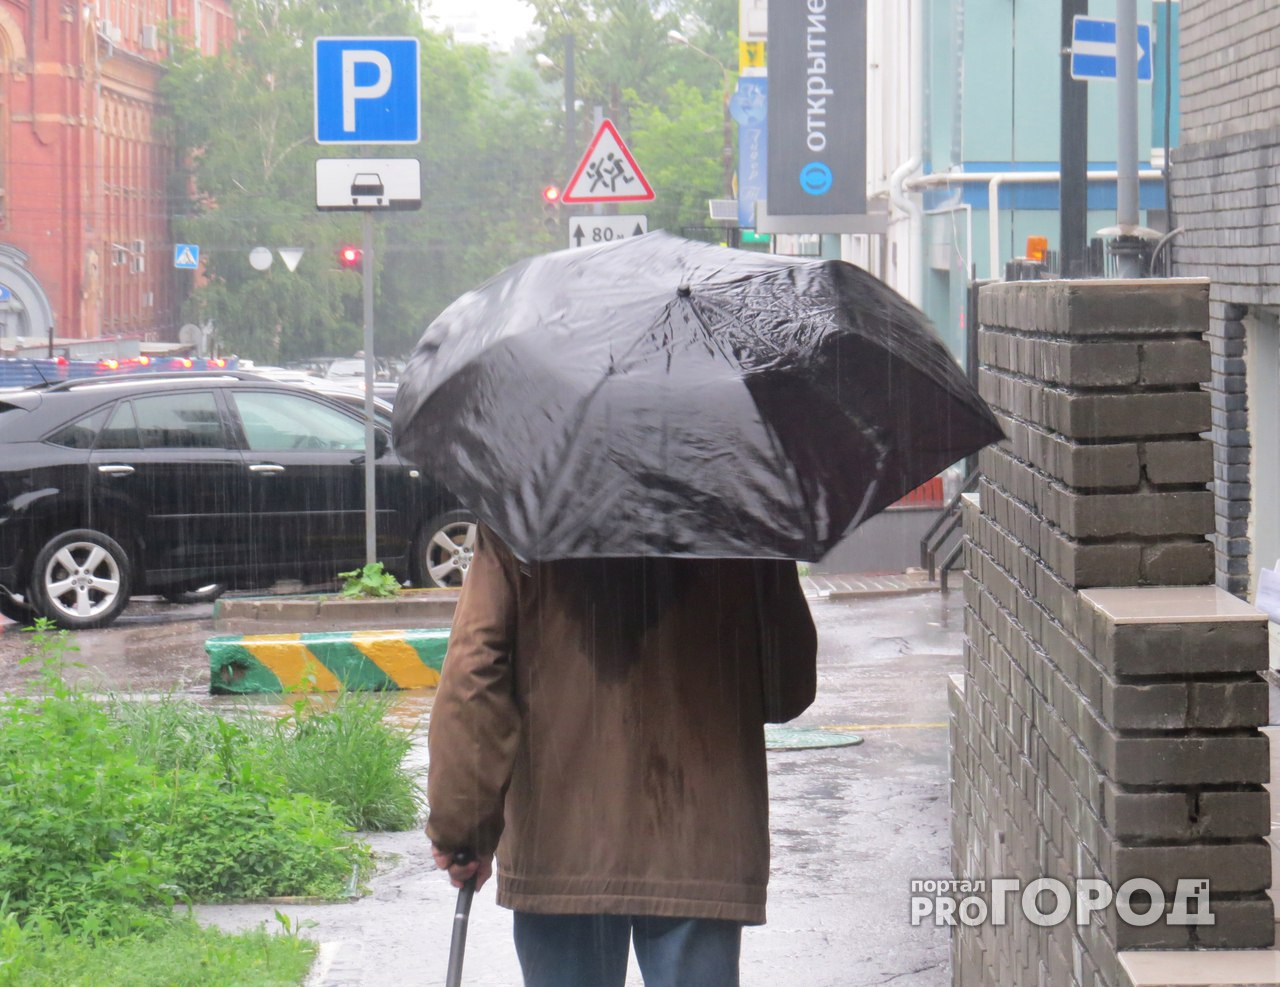 В понедельник в Пензе ожидается дождь и гроза